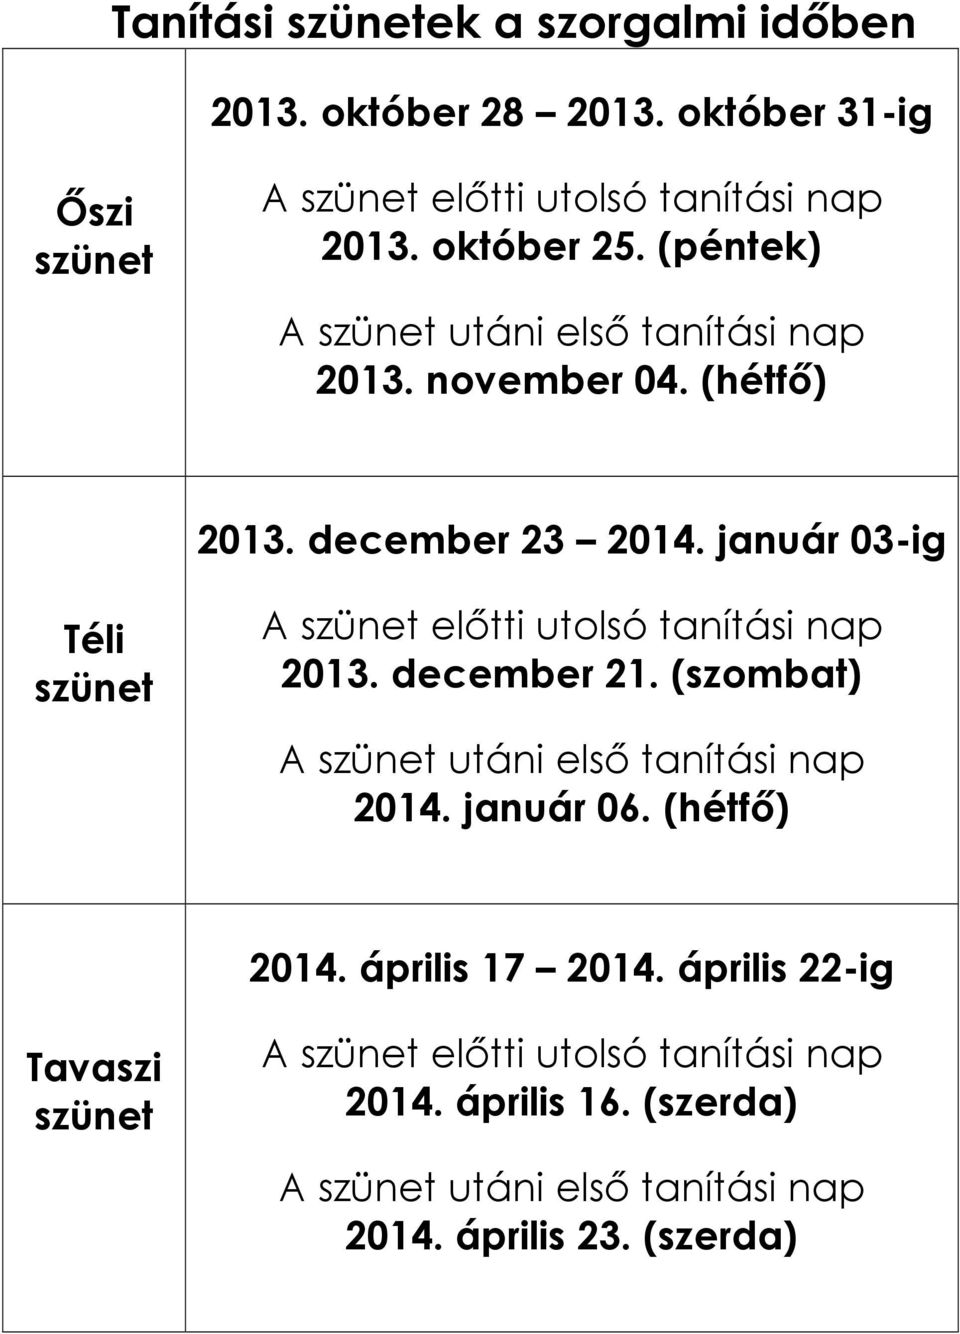 január 03-ig Téli szünet A szünet elıtti utolsó tanítási nap 2013. december 21. (szombat) A szünet utáni elsı tanítási nap 2014. január 06.